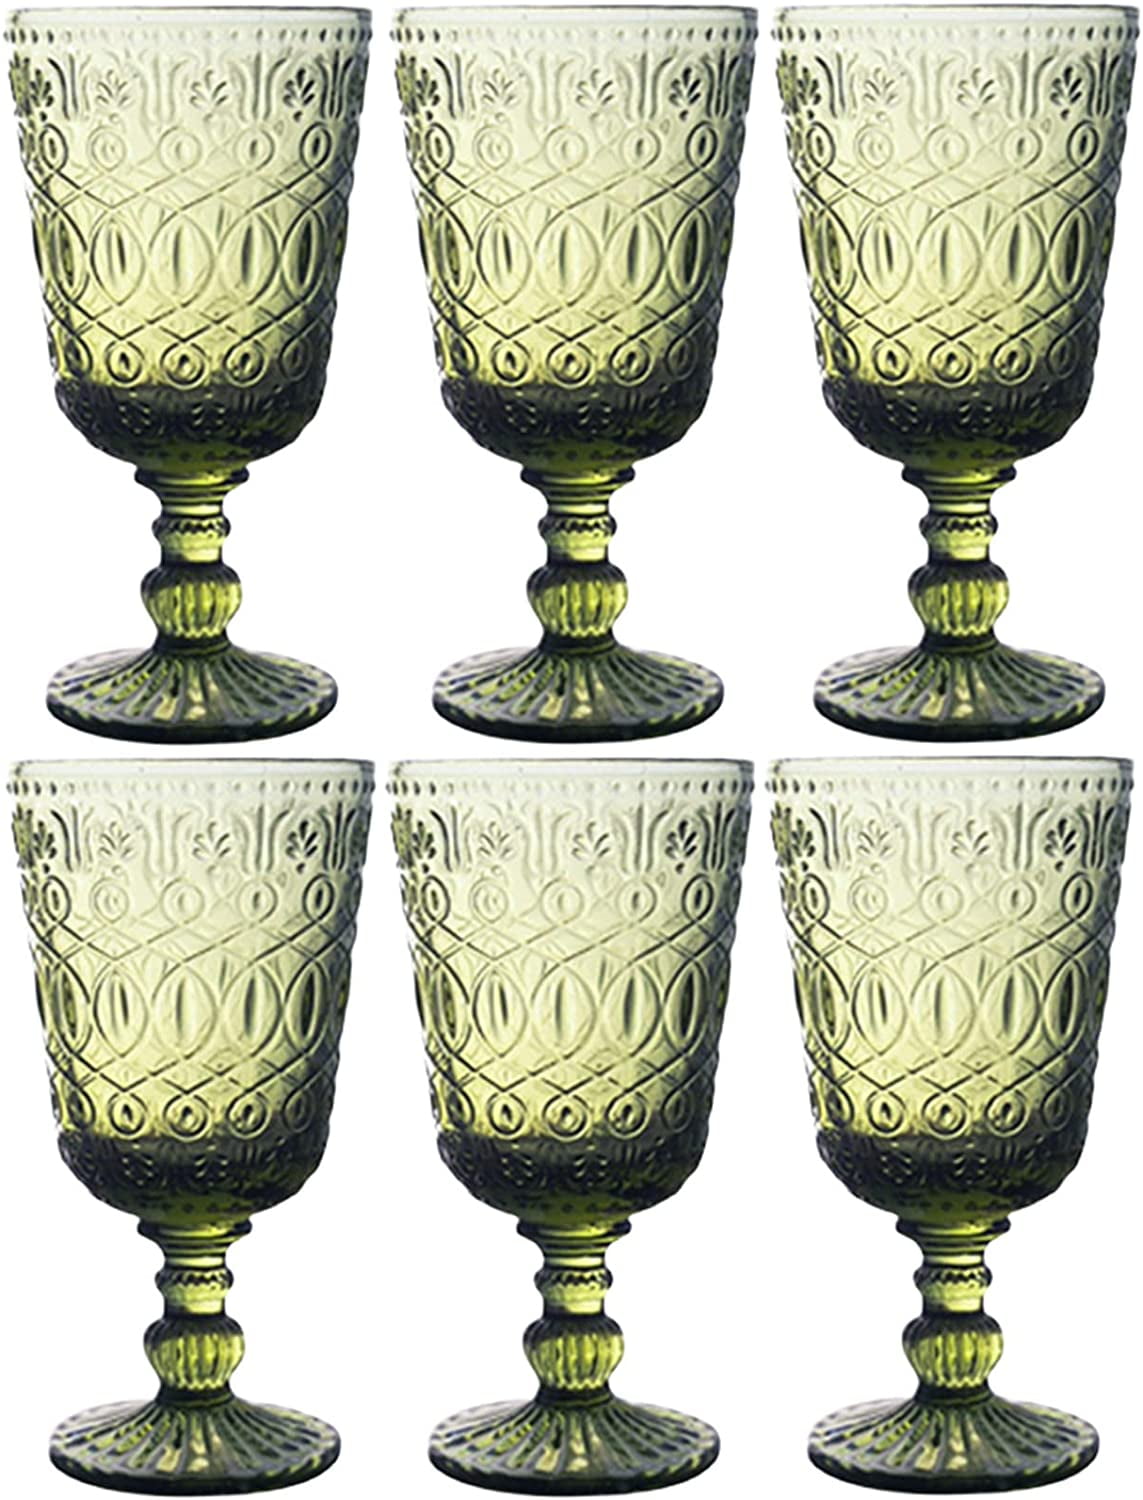 Vintage Colored Wine Glasses, Vintage Style Wine Glasses